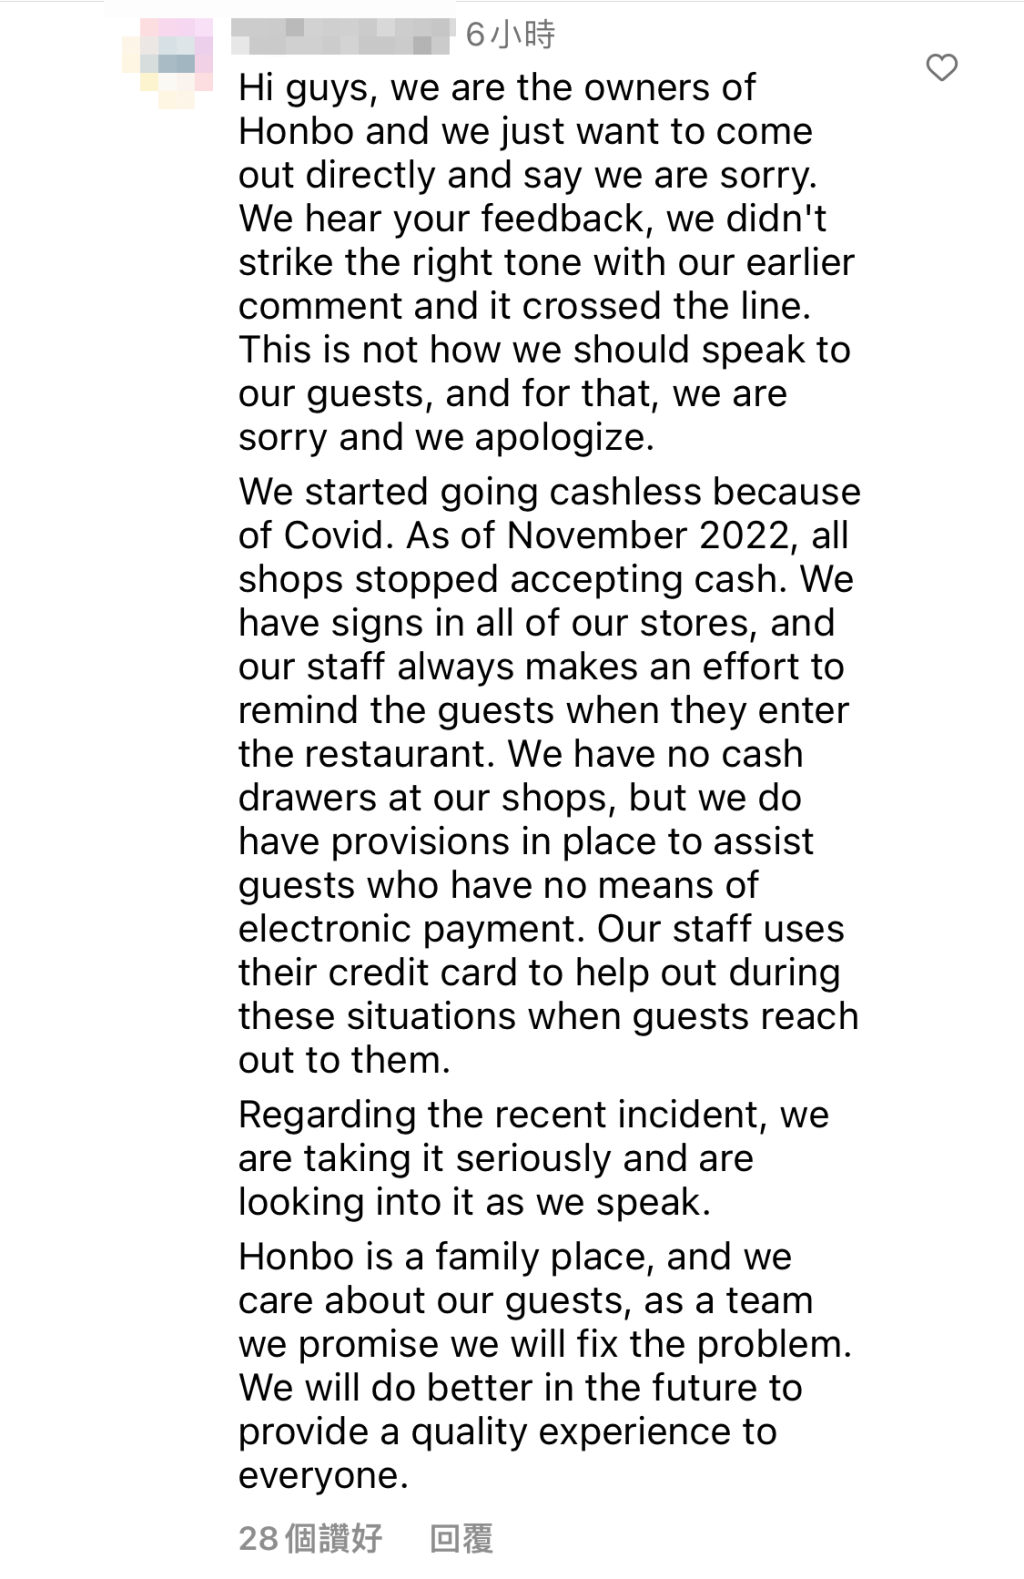 食店今日撰长文道歉。